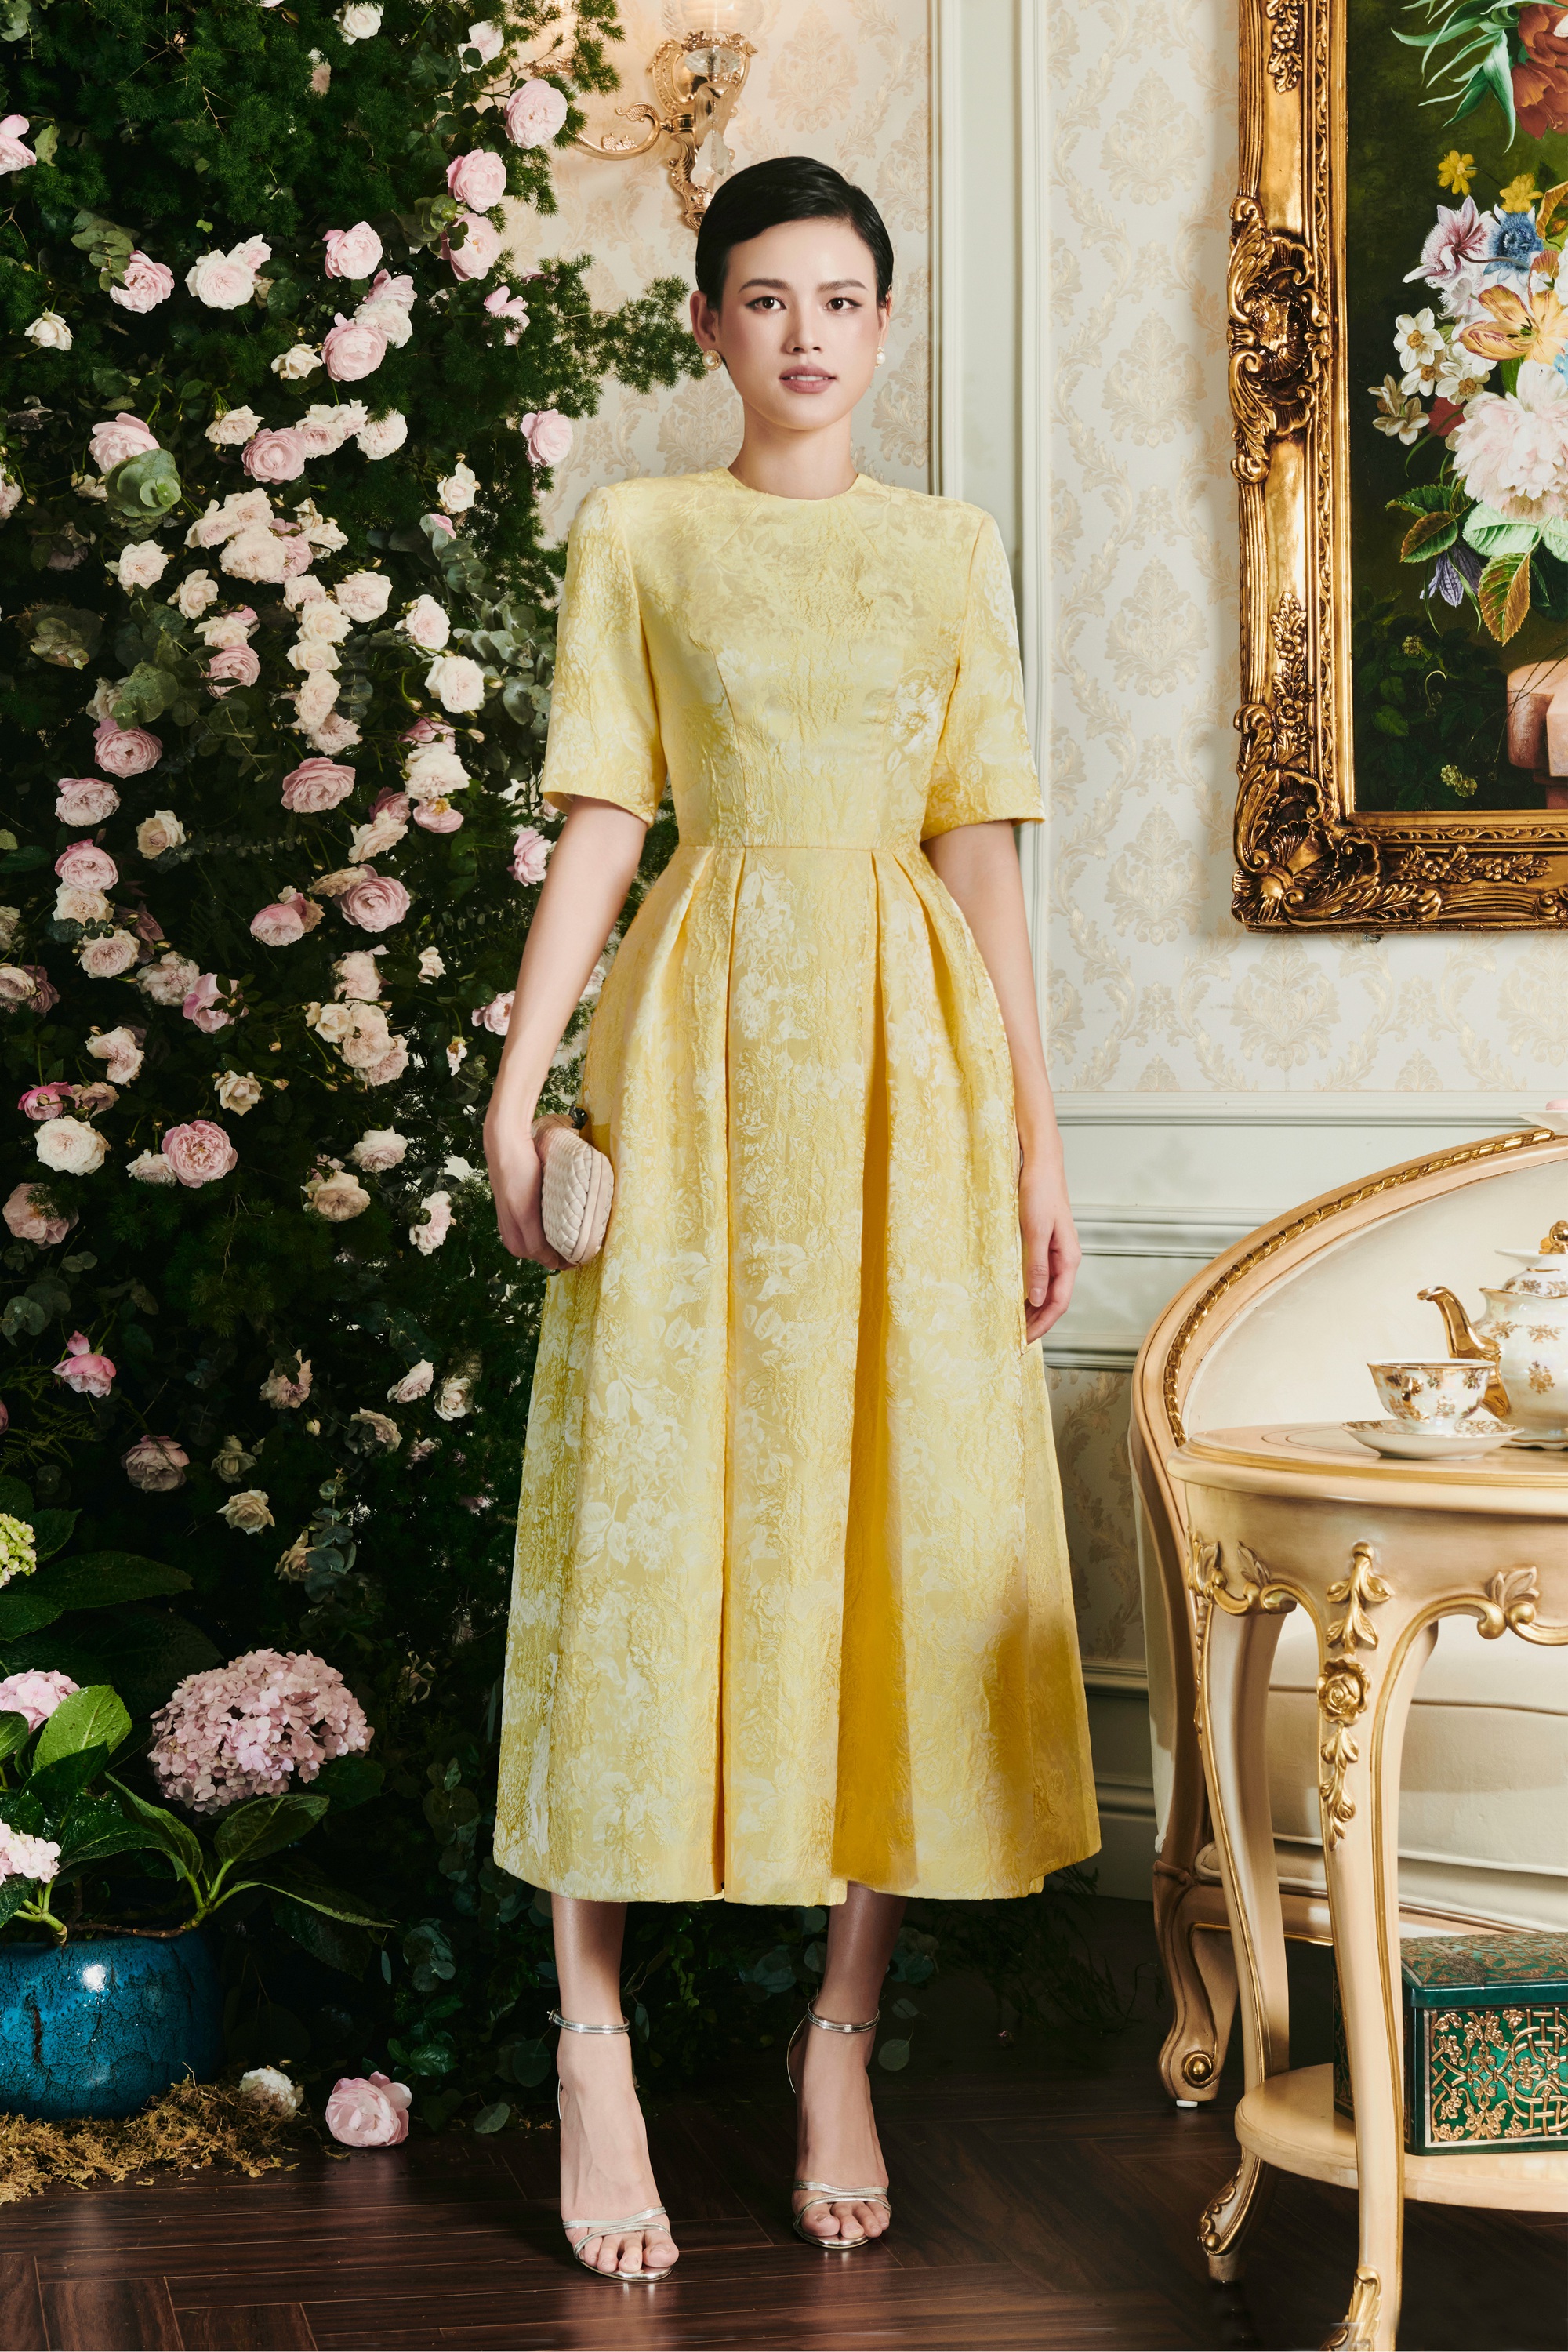 Váy công sở hè 2019  thể hiện đẳng cấp với những mẫu thiết kế cao cấp   Thời Trang NEVA  Luôn Đón Đầu Xu Hướng